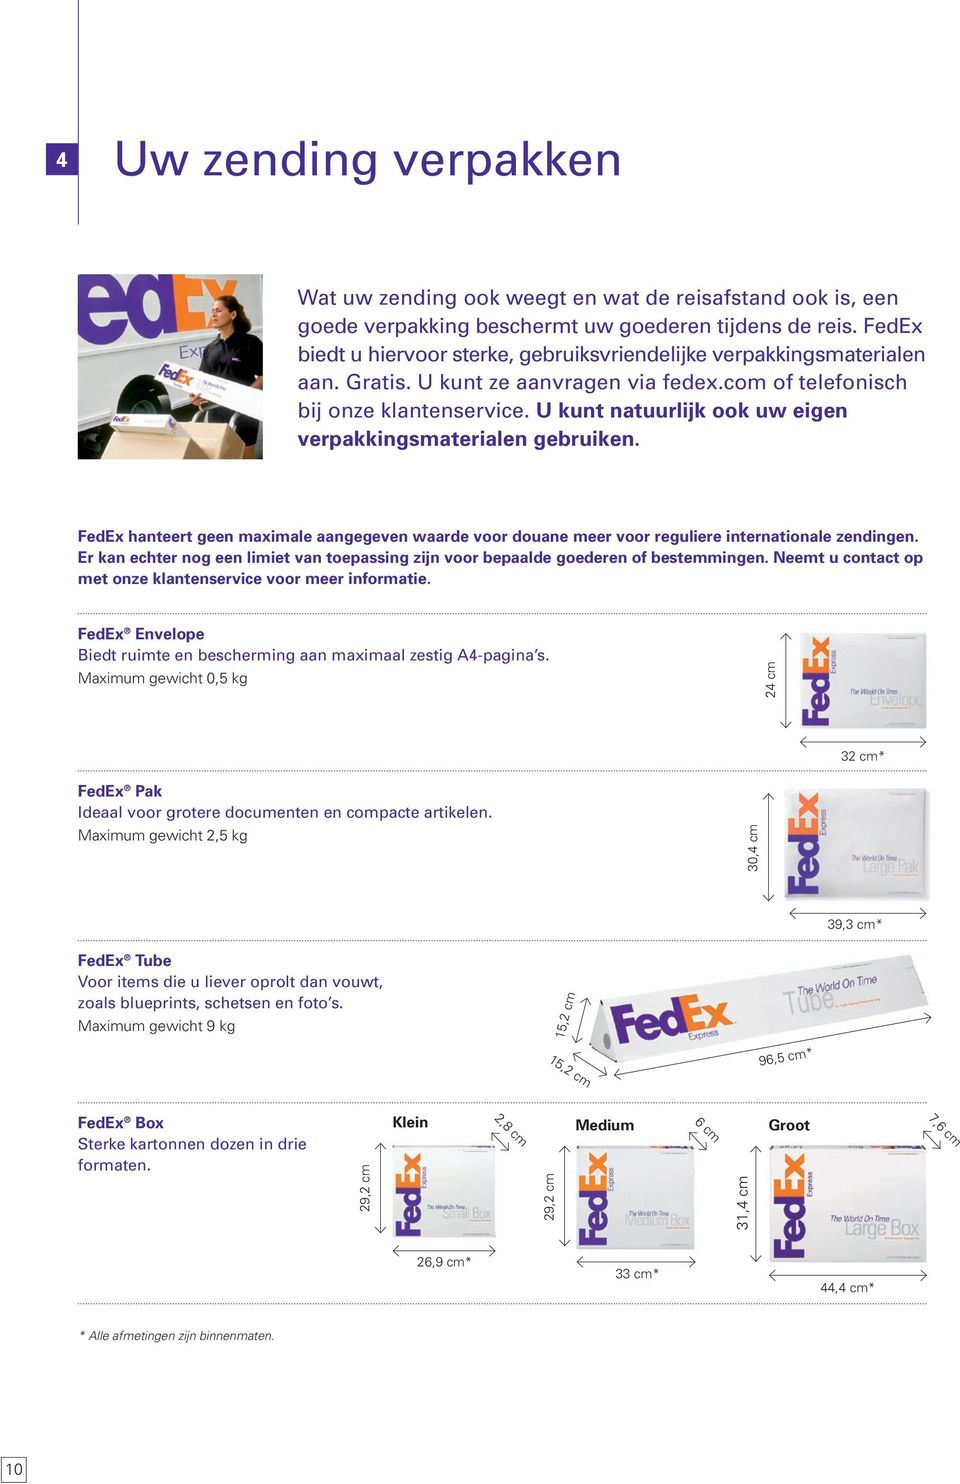 U kunt natuurlijk ook uw eigen verpakkingsmaterialen gebruiken. FedEx hanteert geen maximale aangegeven waarde voor douane meer voor reguliere internationale zendingen.